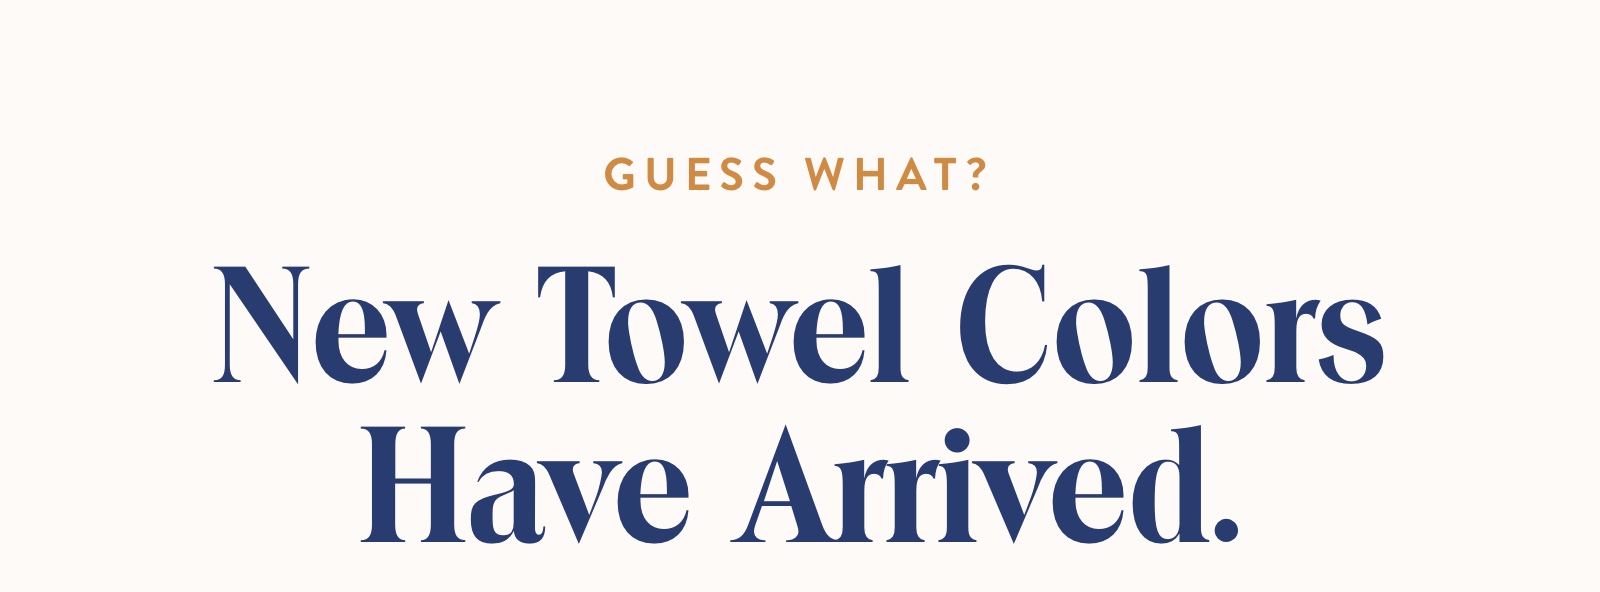 New Towel Colors